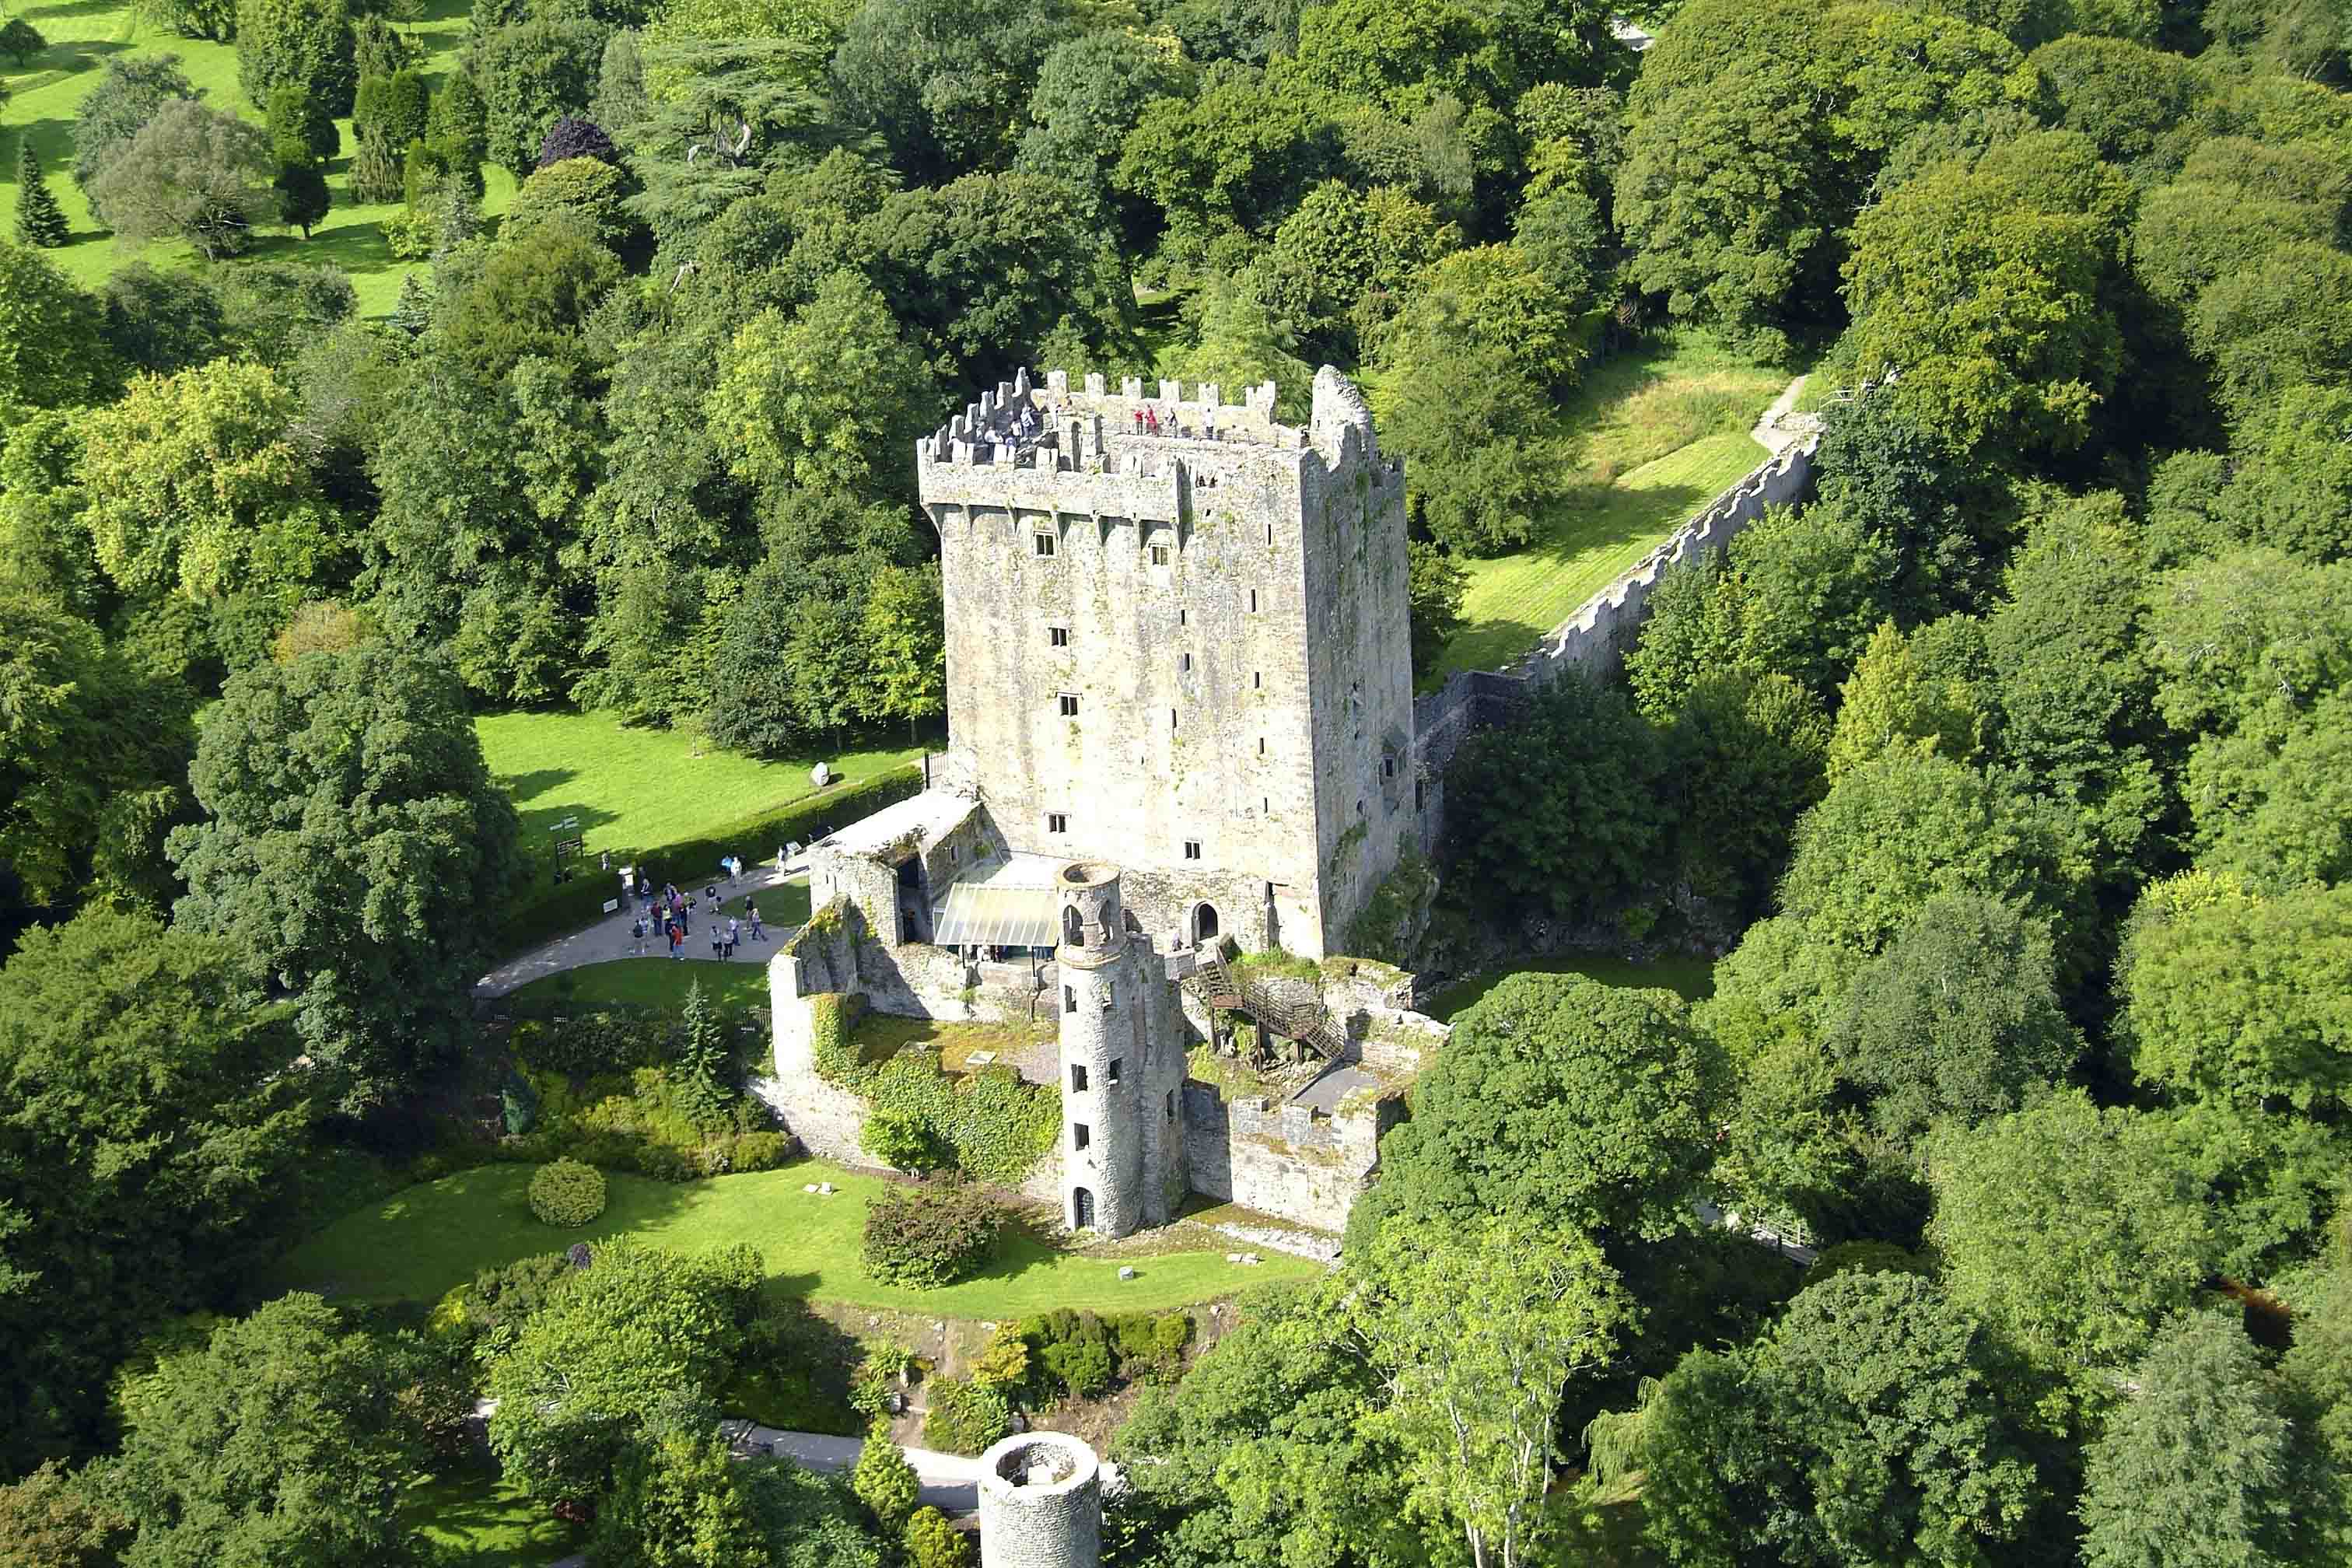 Blarney Castle.jpg